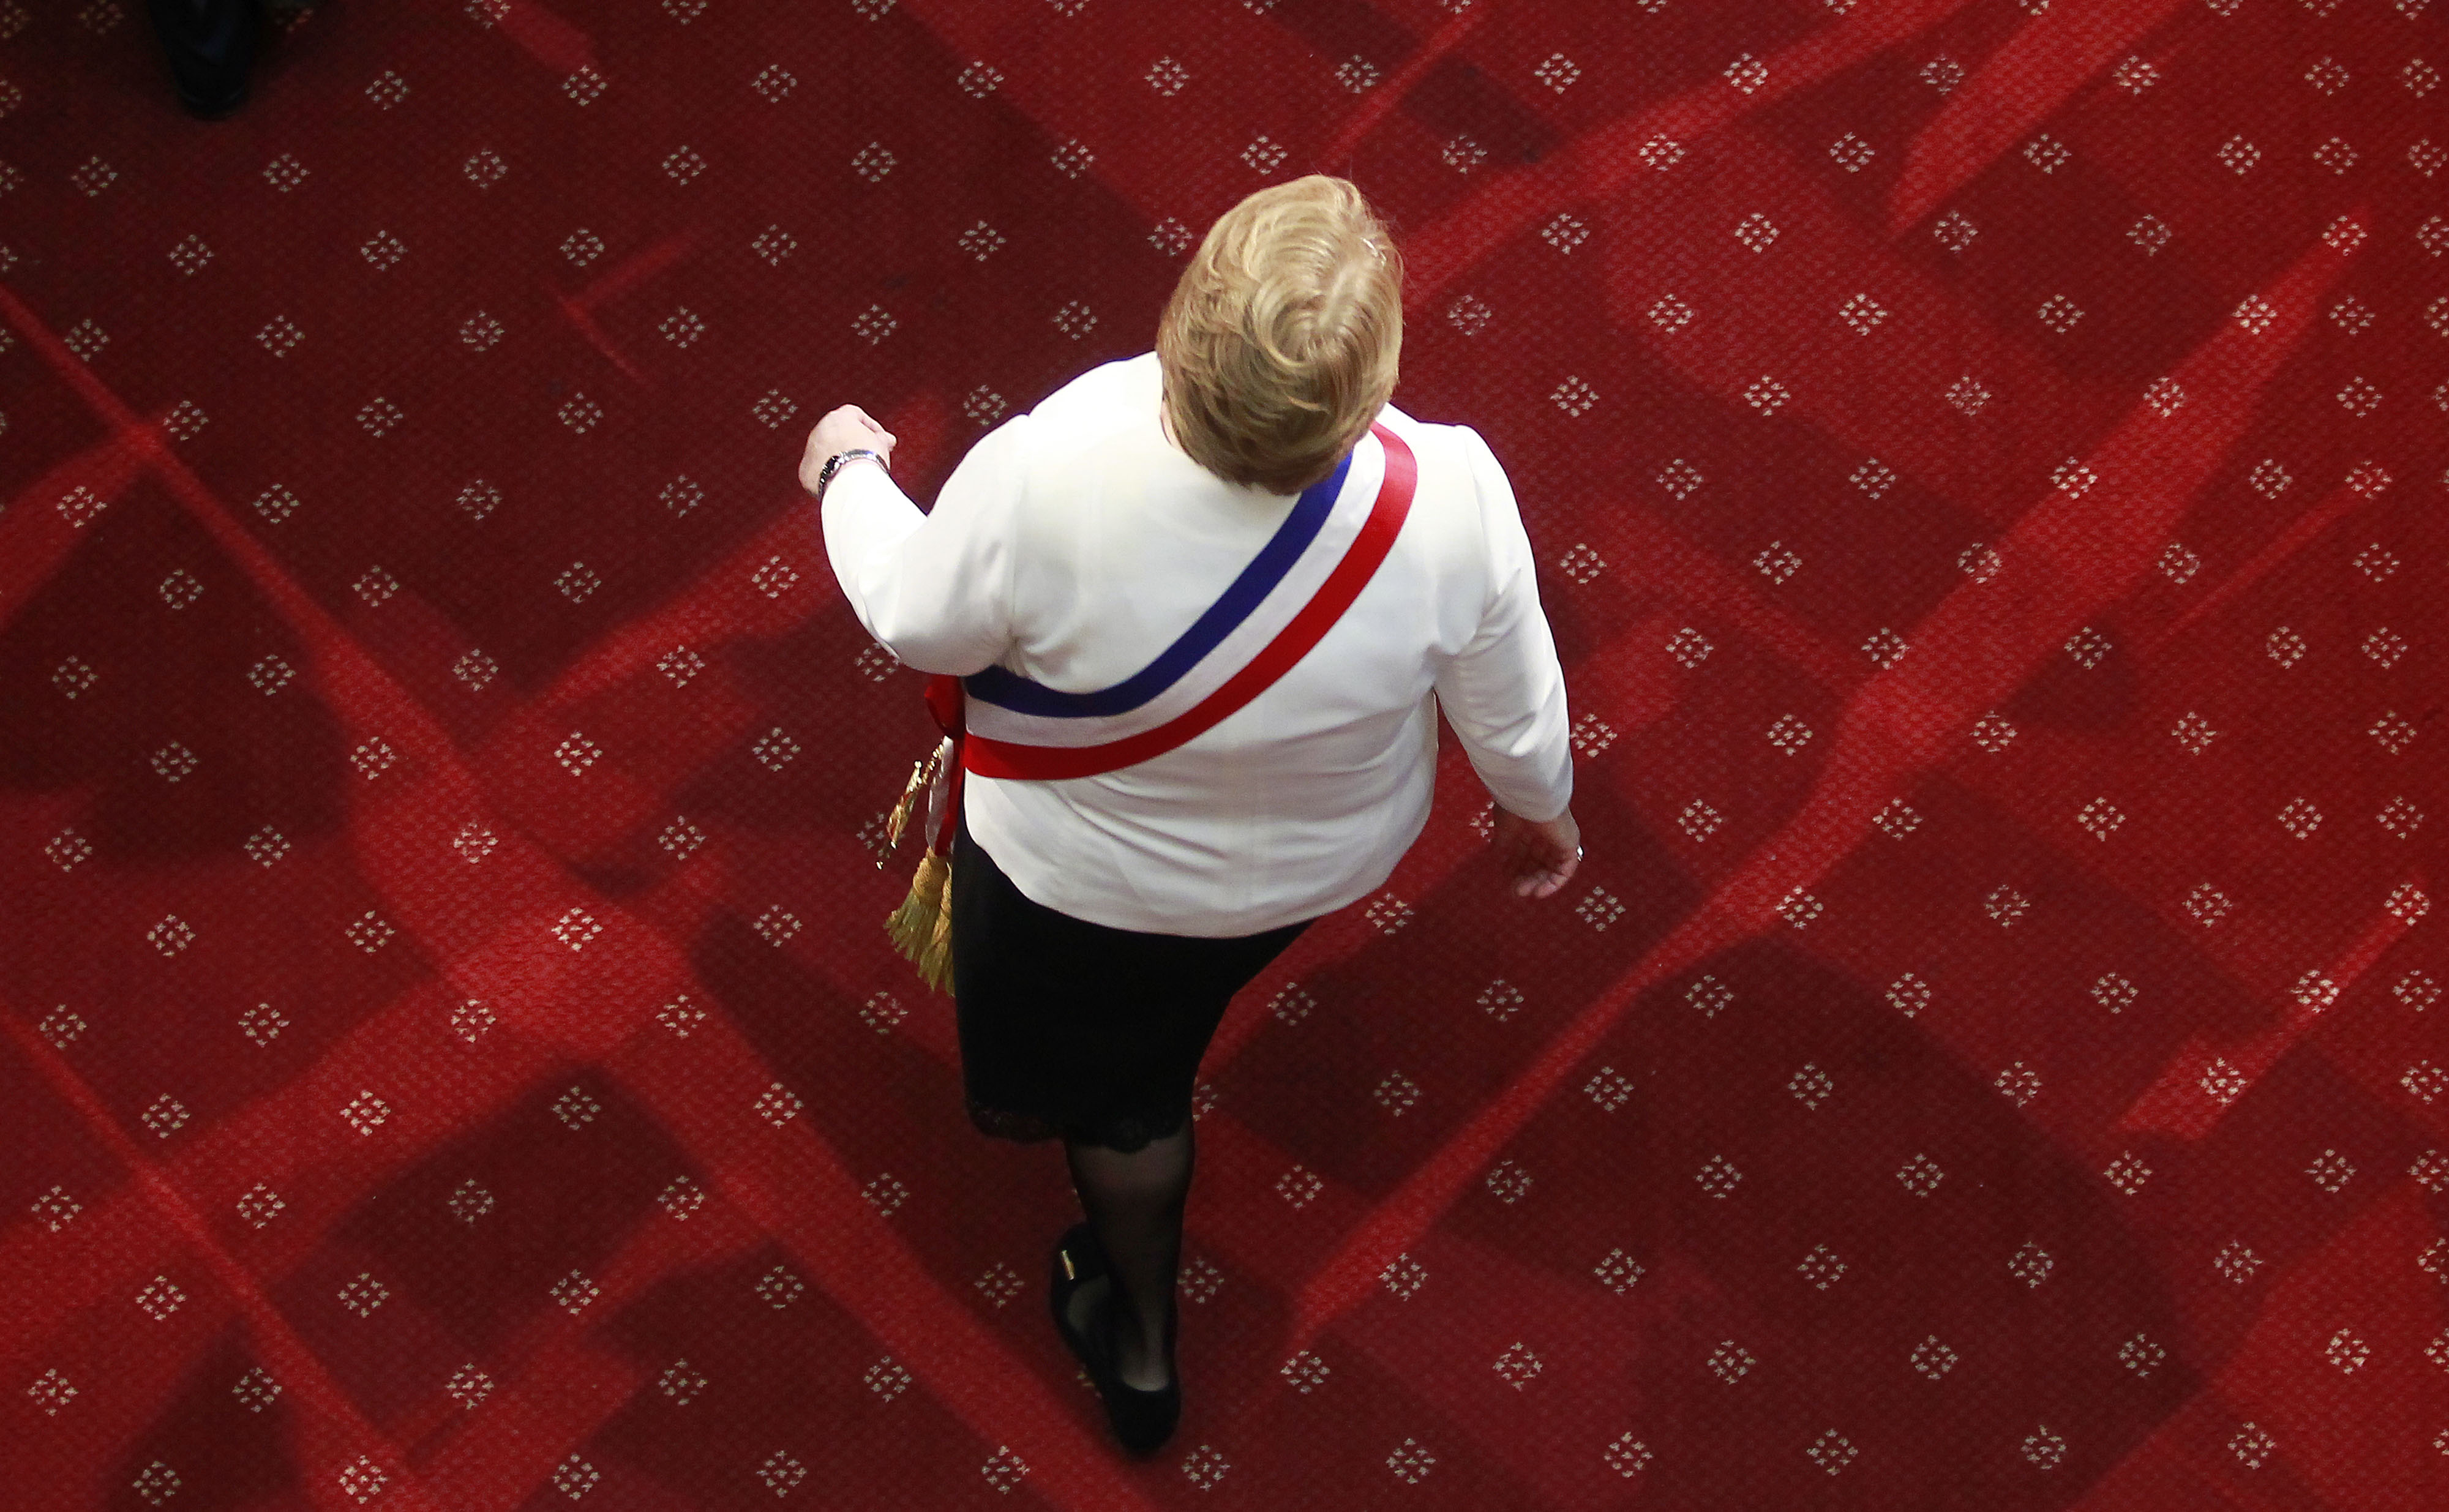 21 de Mayo de 2015/VALPARAISO La presidenta, Michelle Bachelet, ingresa al salón plenario del Congreso Nacional donde realizara su segunda Cuenta Pública al país ante la Sesión del Congreso Pleno FOTO:RODRIGO SAENZ/AGENCIAUNO